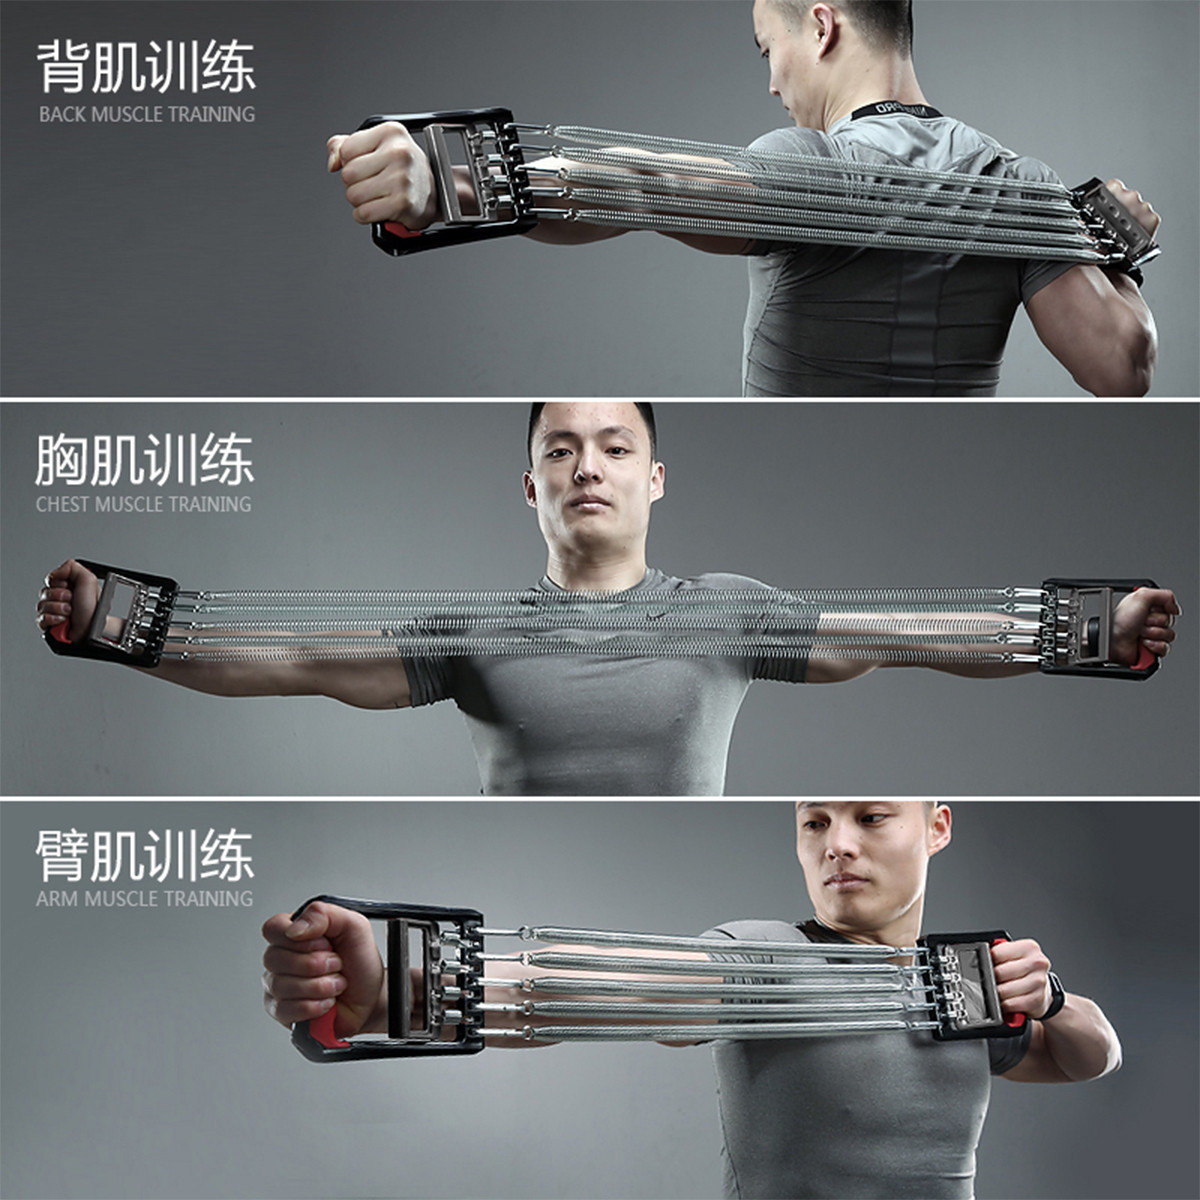 弹簧拉力器扩胸器男士健身器材家用多功能拉簧臂力器锻炼训练胸肌